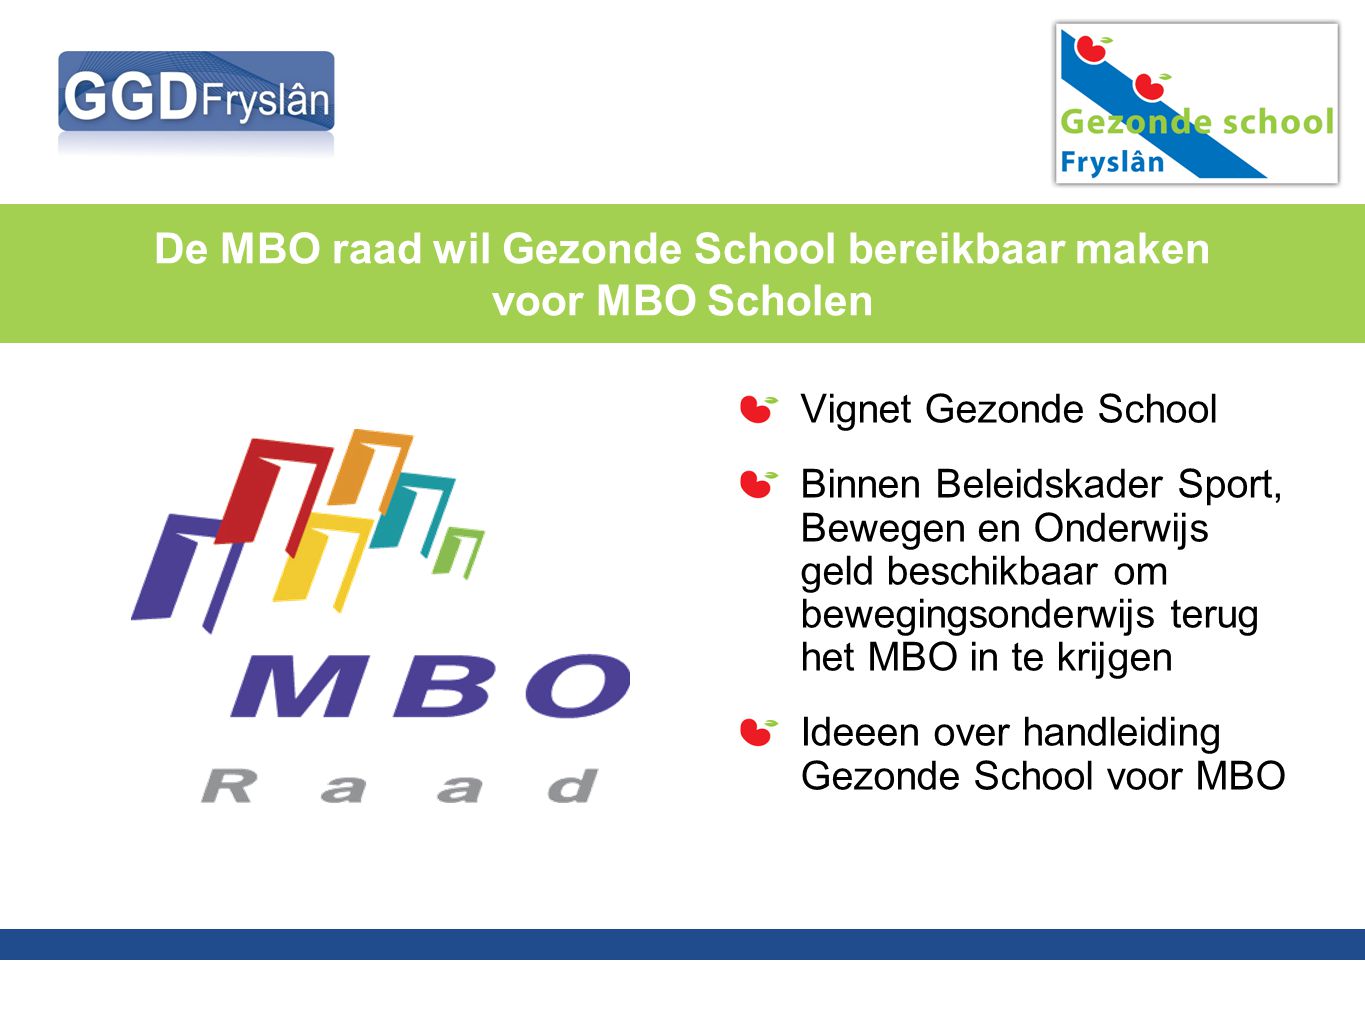 De MBO raad wil Gezonde School bereikbaar maken voor MBO Scholen